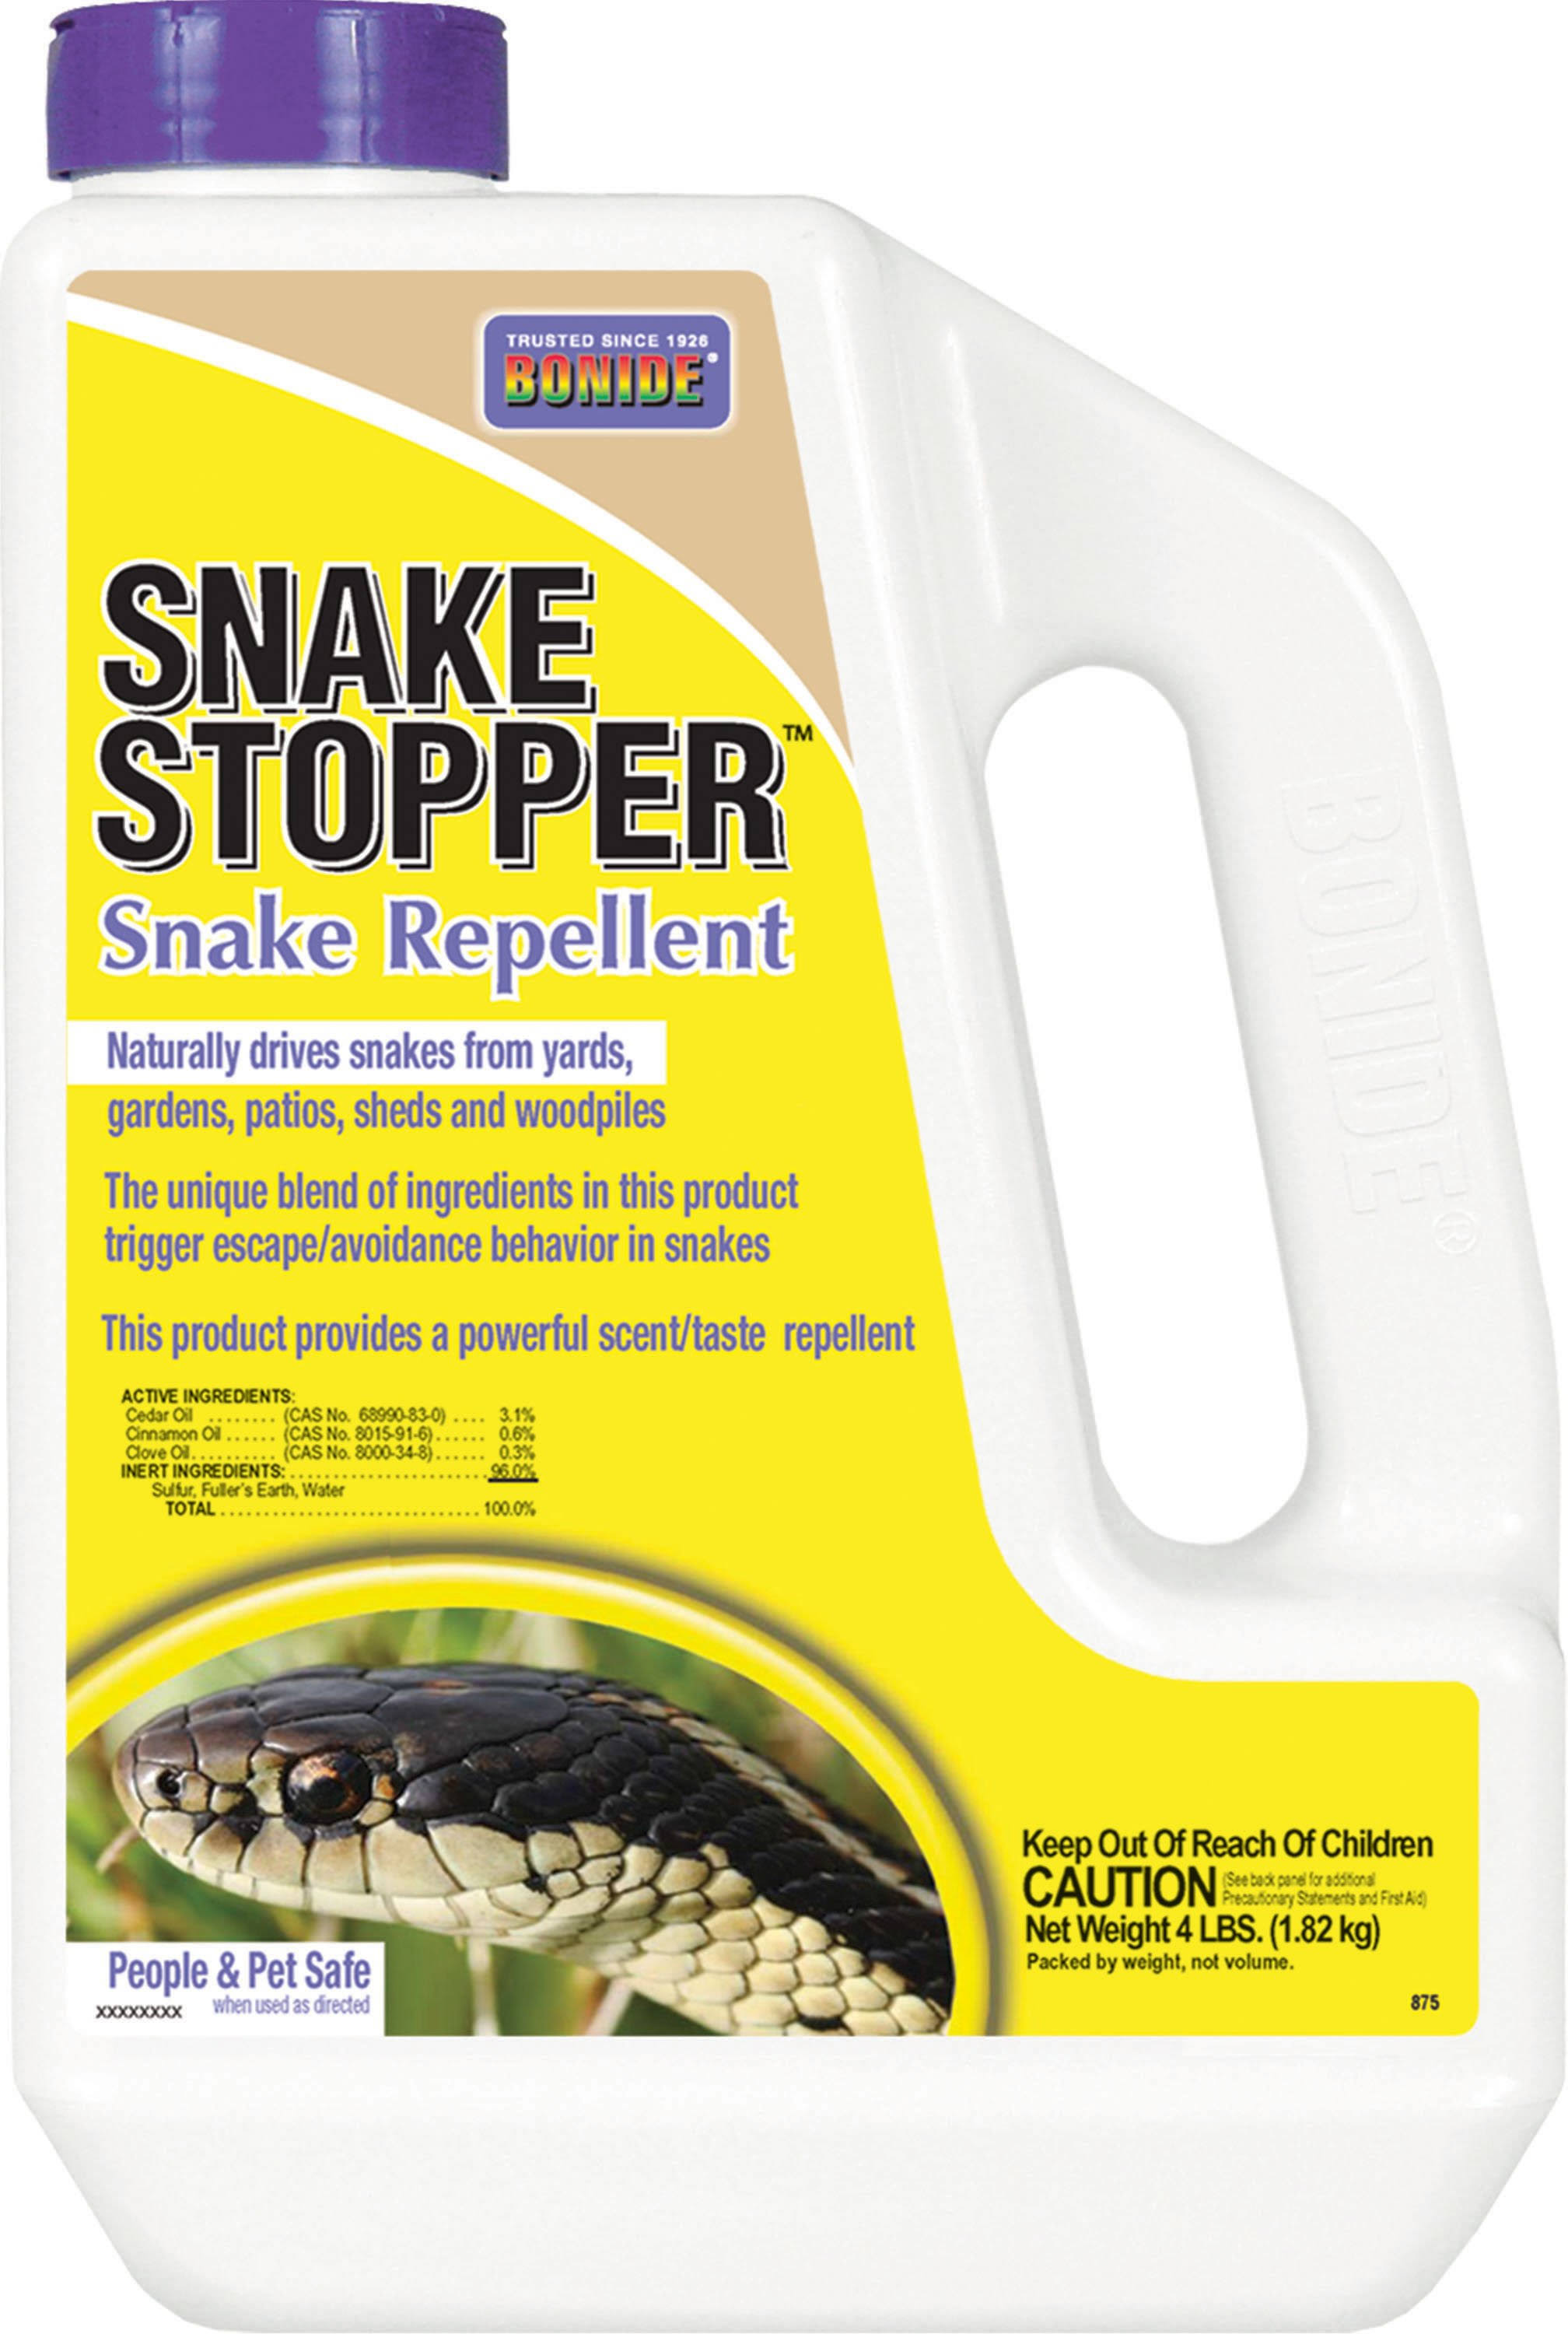 Bonide 875 Snake Stopper Snake Repellent - 4lbs